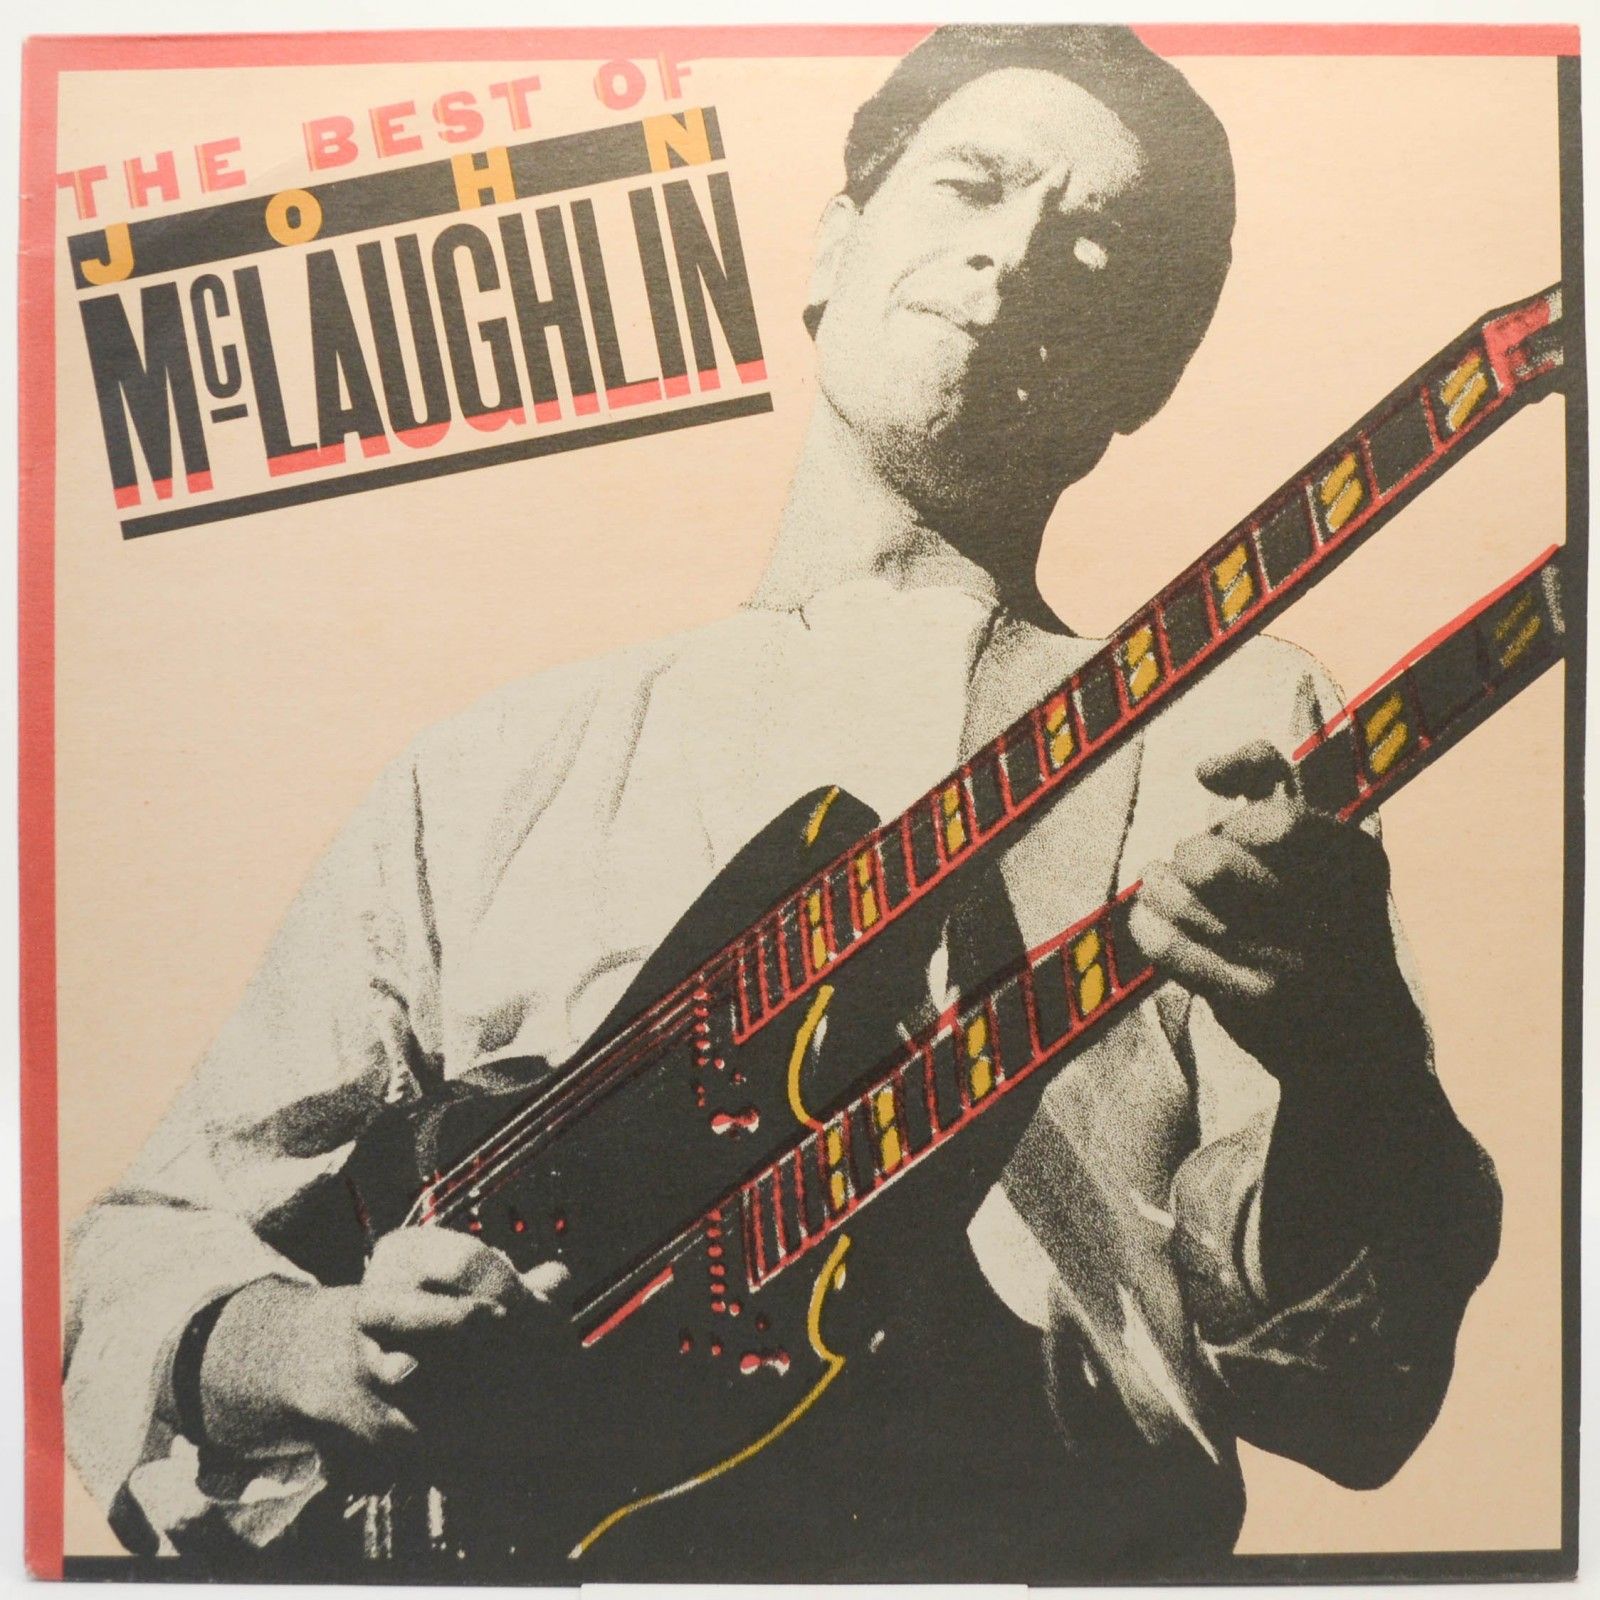 John McLaughlin — The Best Of, 1980